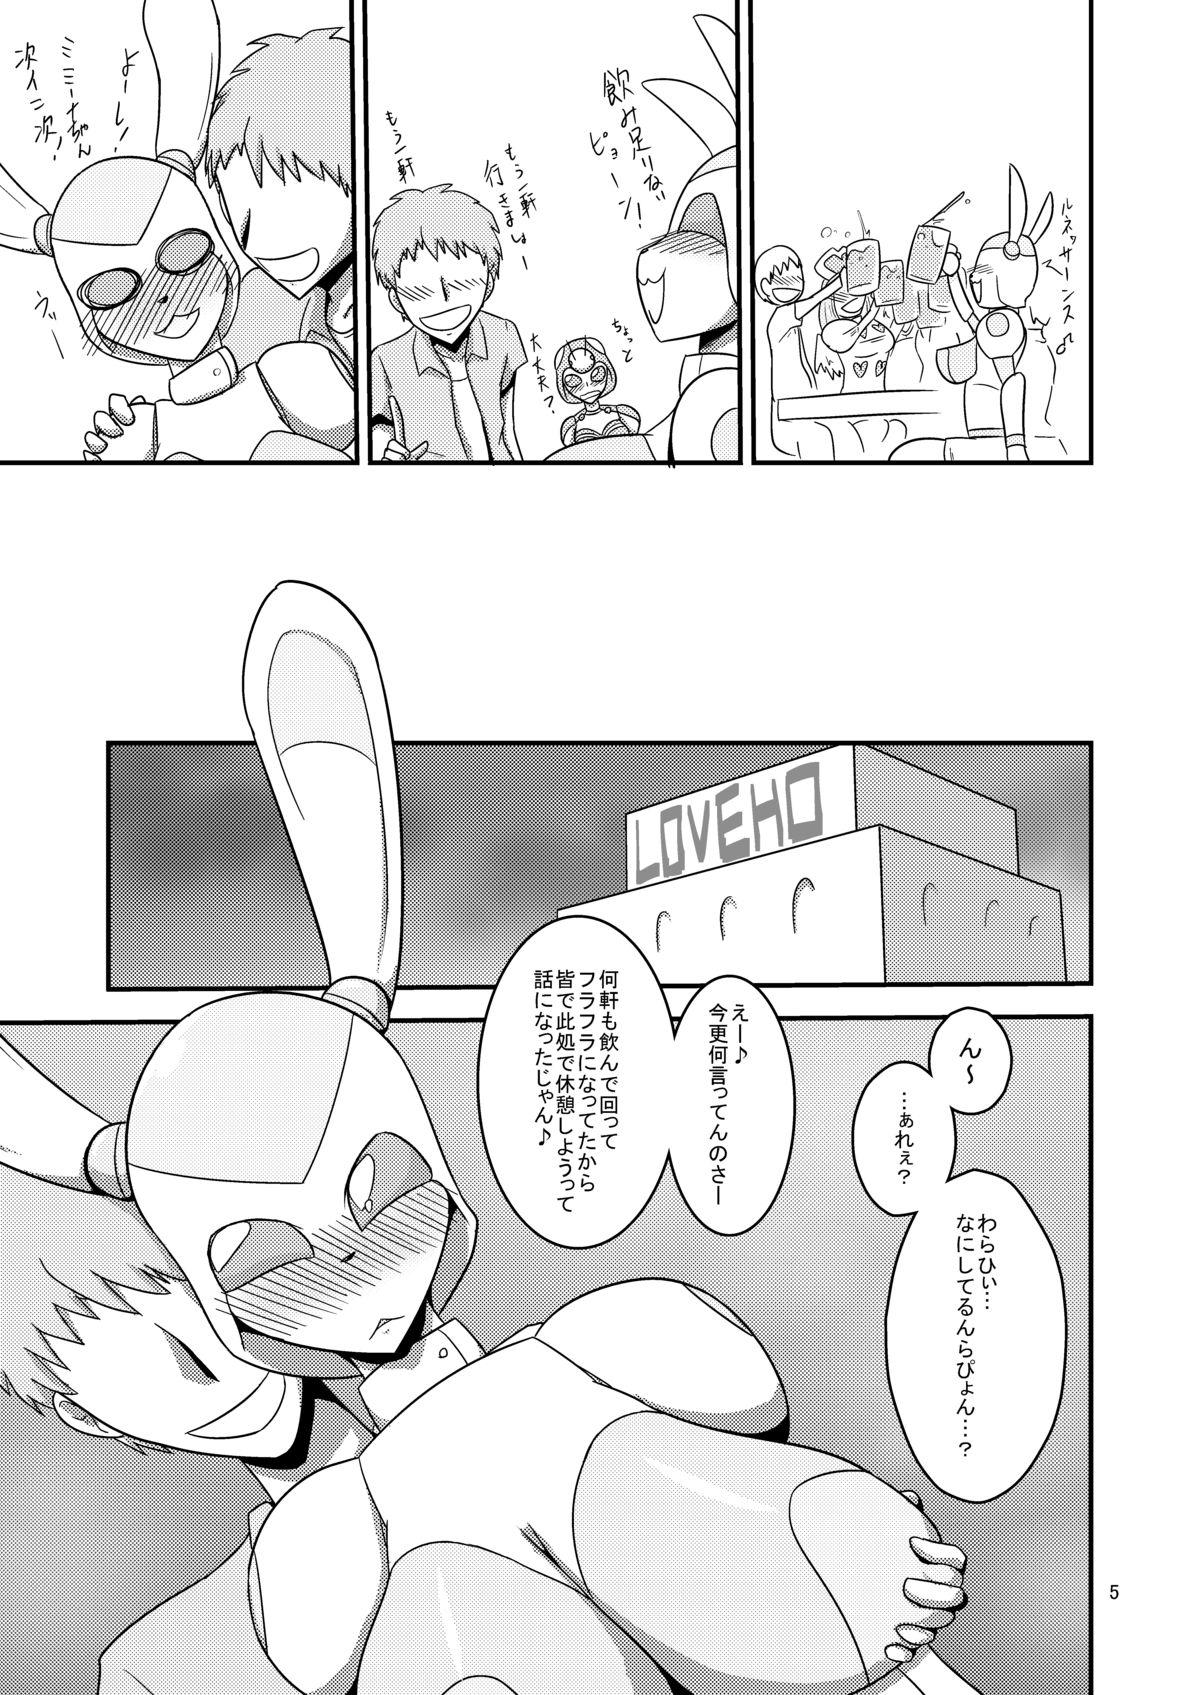 Vaginal NichiAsa Deisui Robot Bitch! Story - Page 6